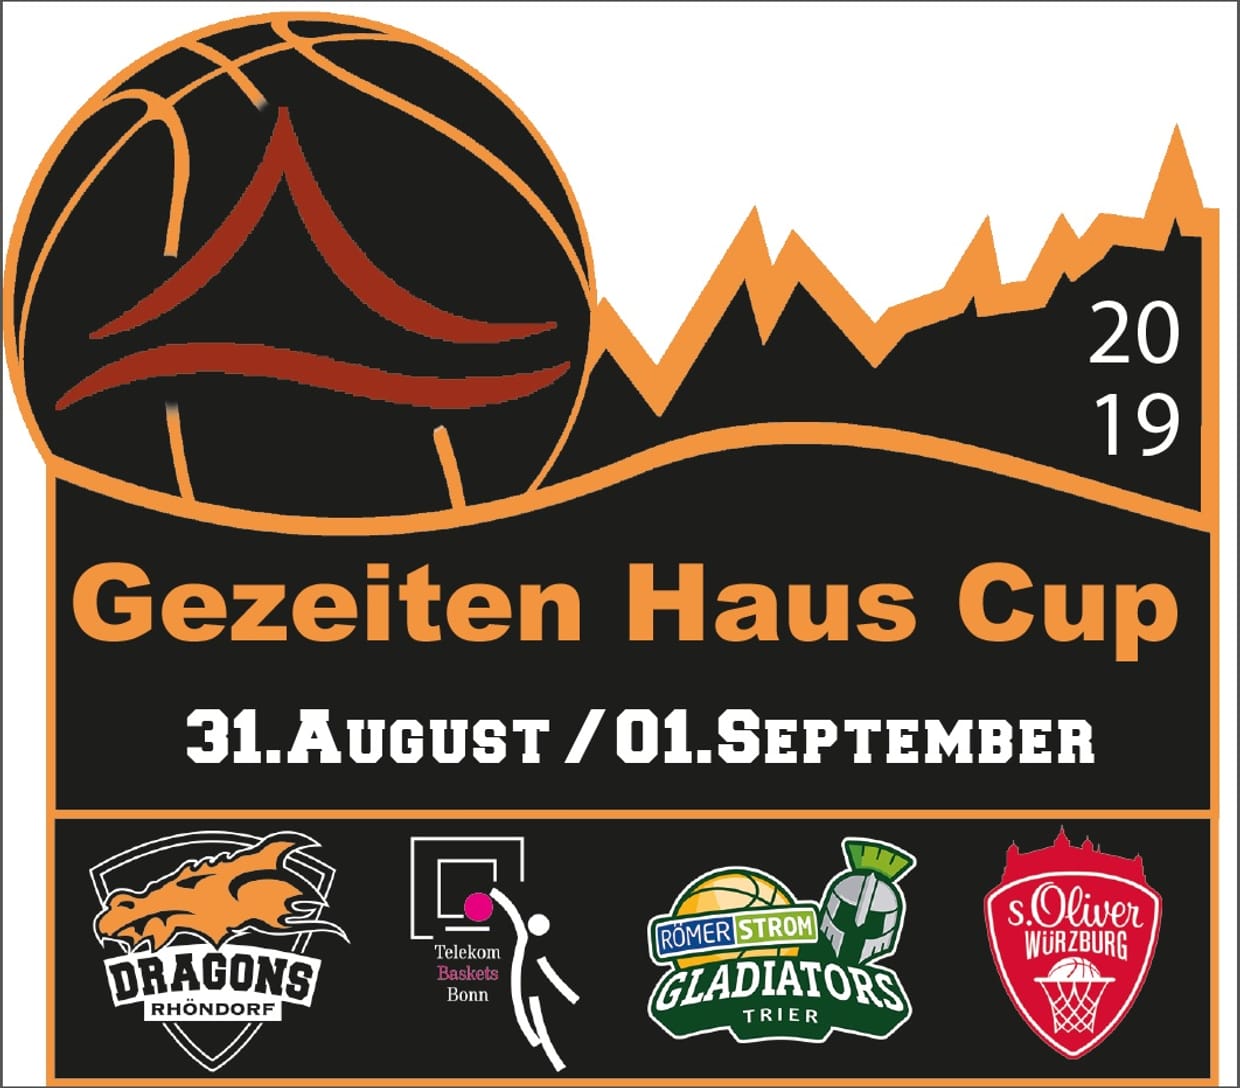 Gezeiten-Haus Cup 2019  Samstag 